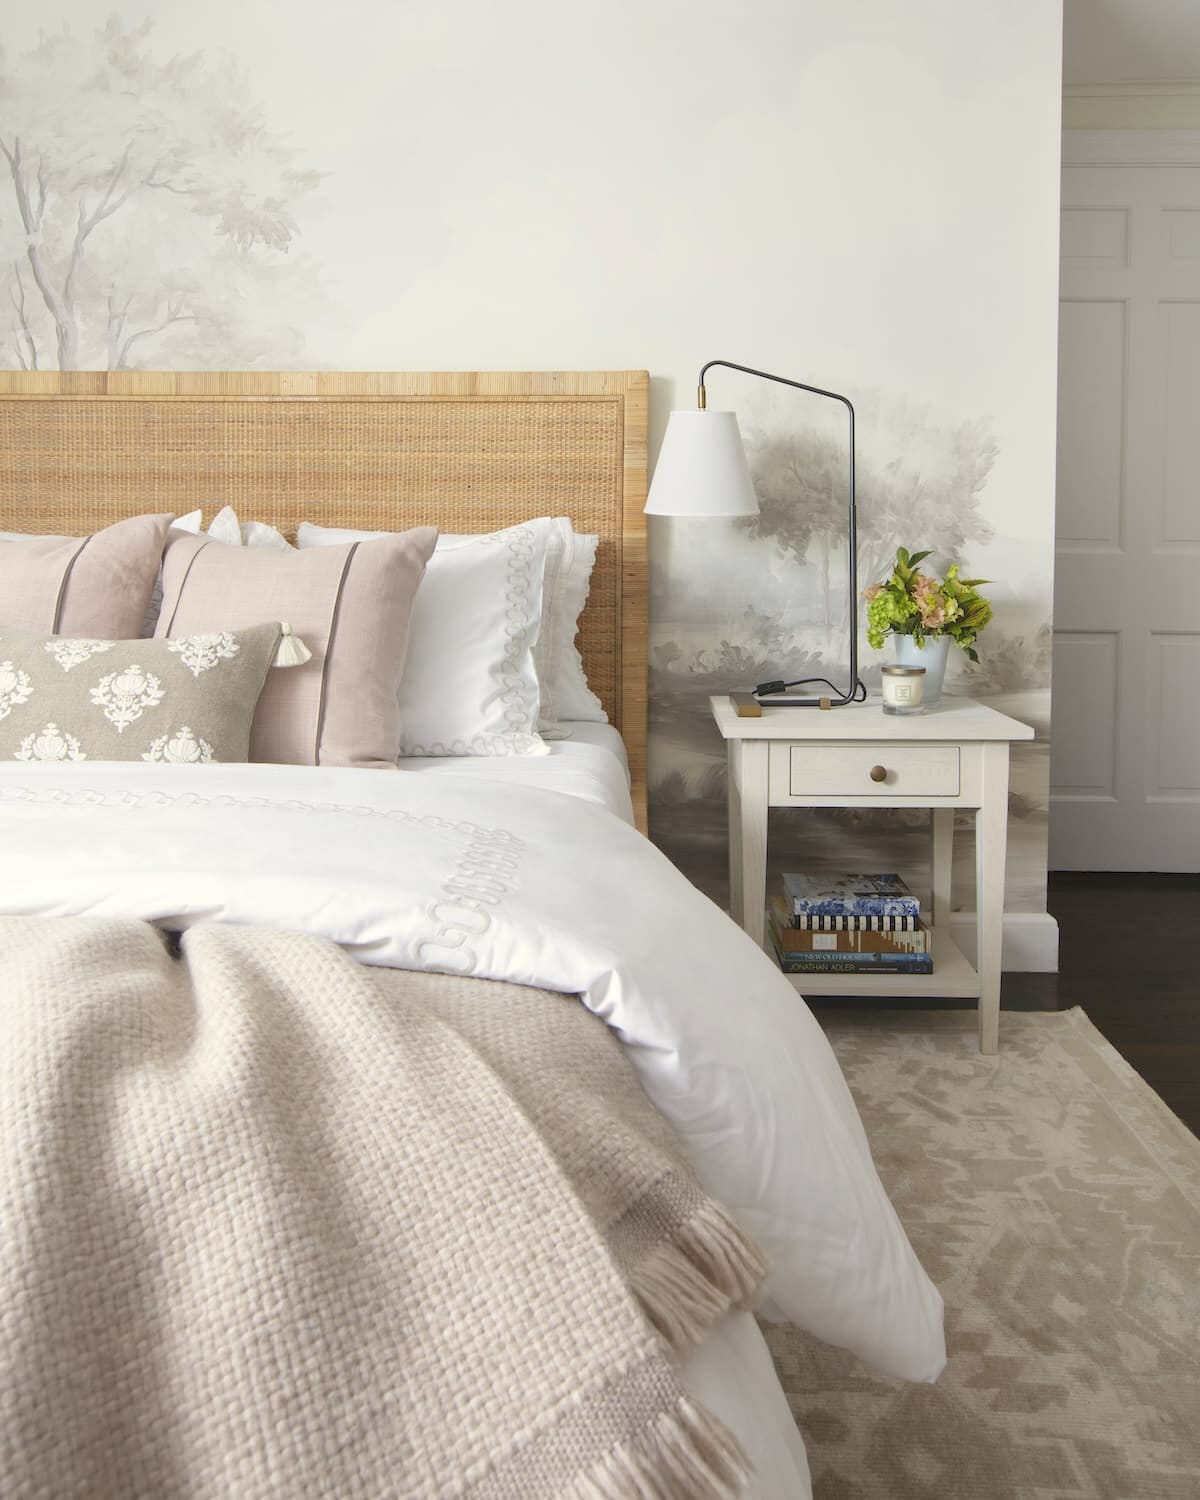 elegant grisaille mural wallpaper behind caned bed frame and modern, feminine bedroom decor